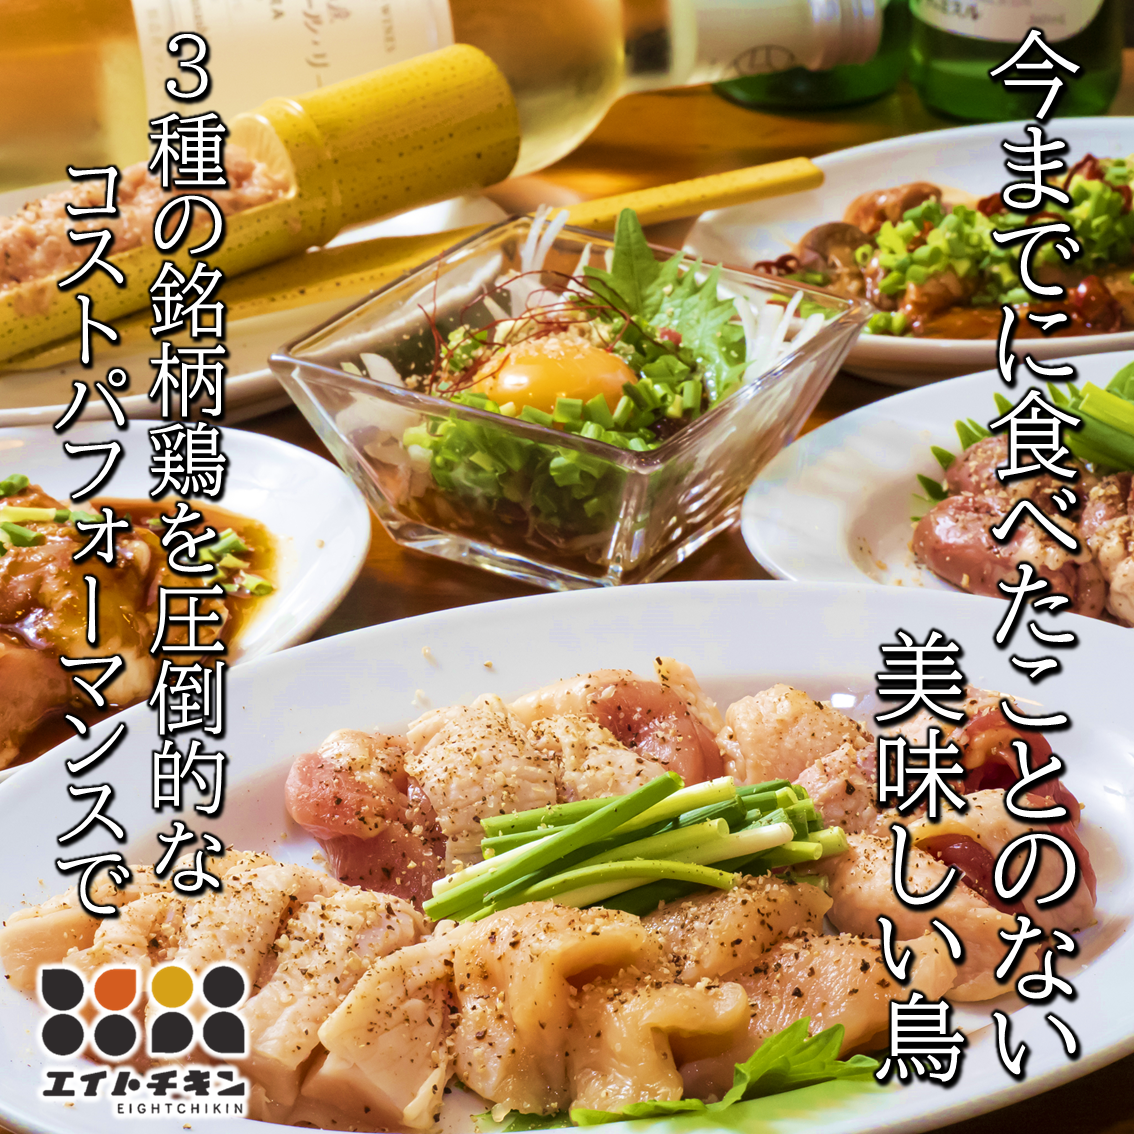 兵庫縣產的美味佳餚～給外食帶來樂趣～提供種類豐富的雞肉烤肉和雞肉料理♪